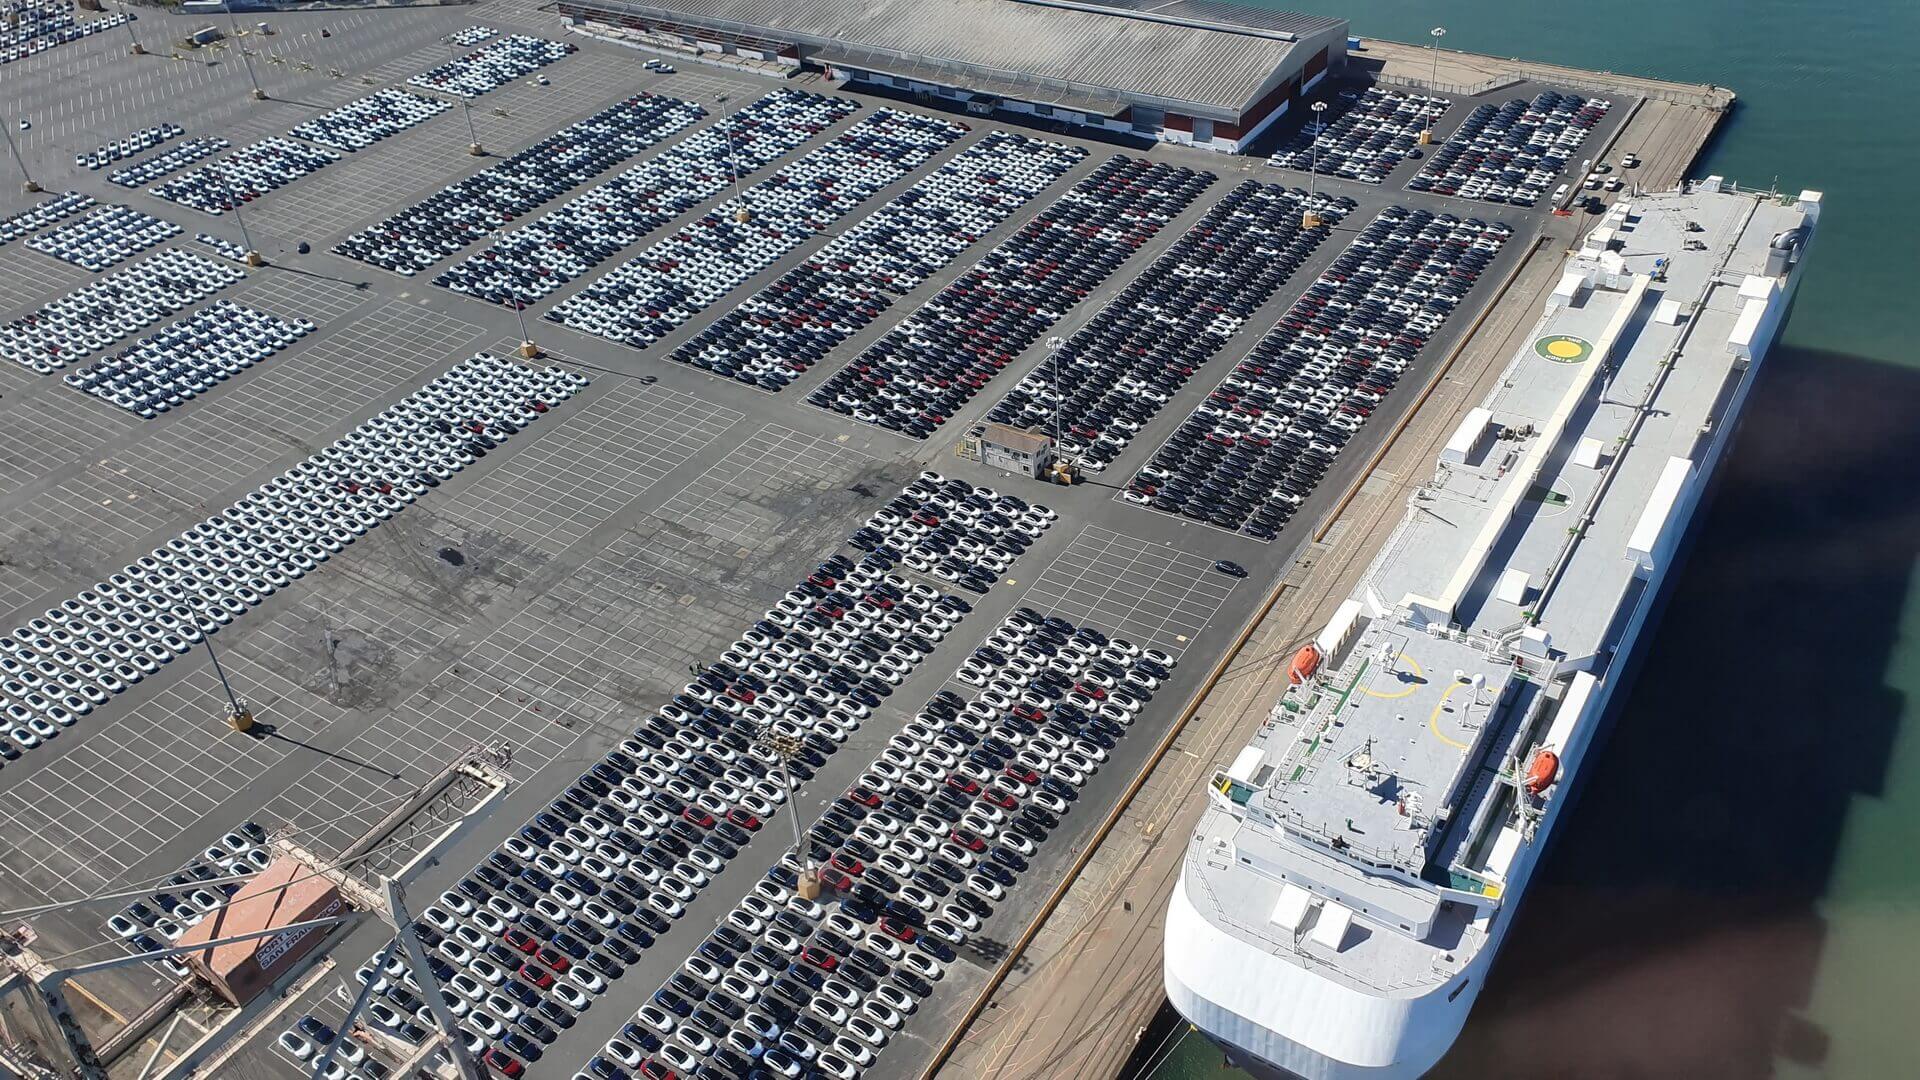 Партия праворульных Tesla Model 3 ожидает погрузки на корабль в порту Сан-Франциско